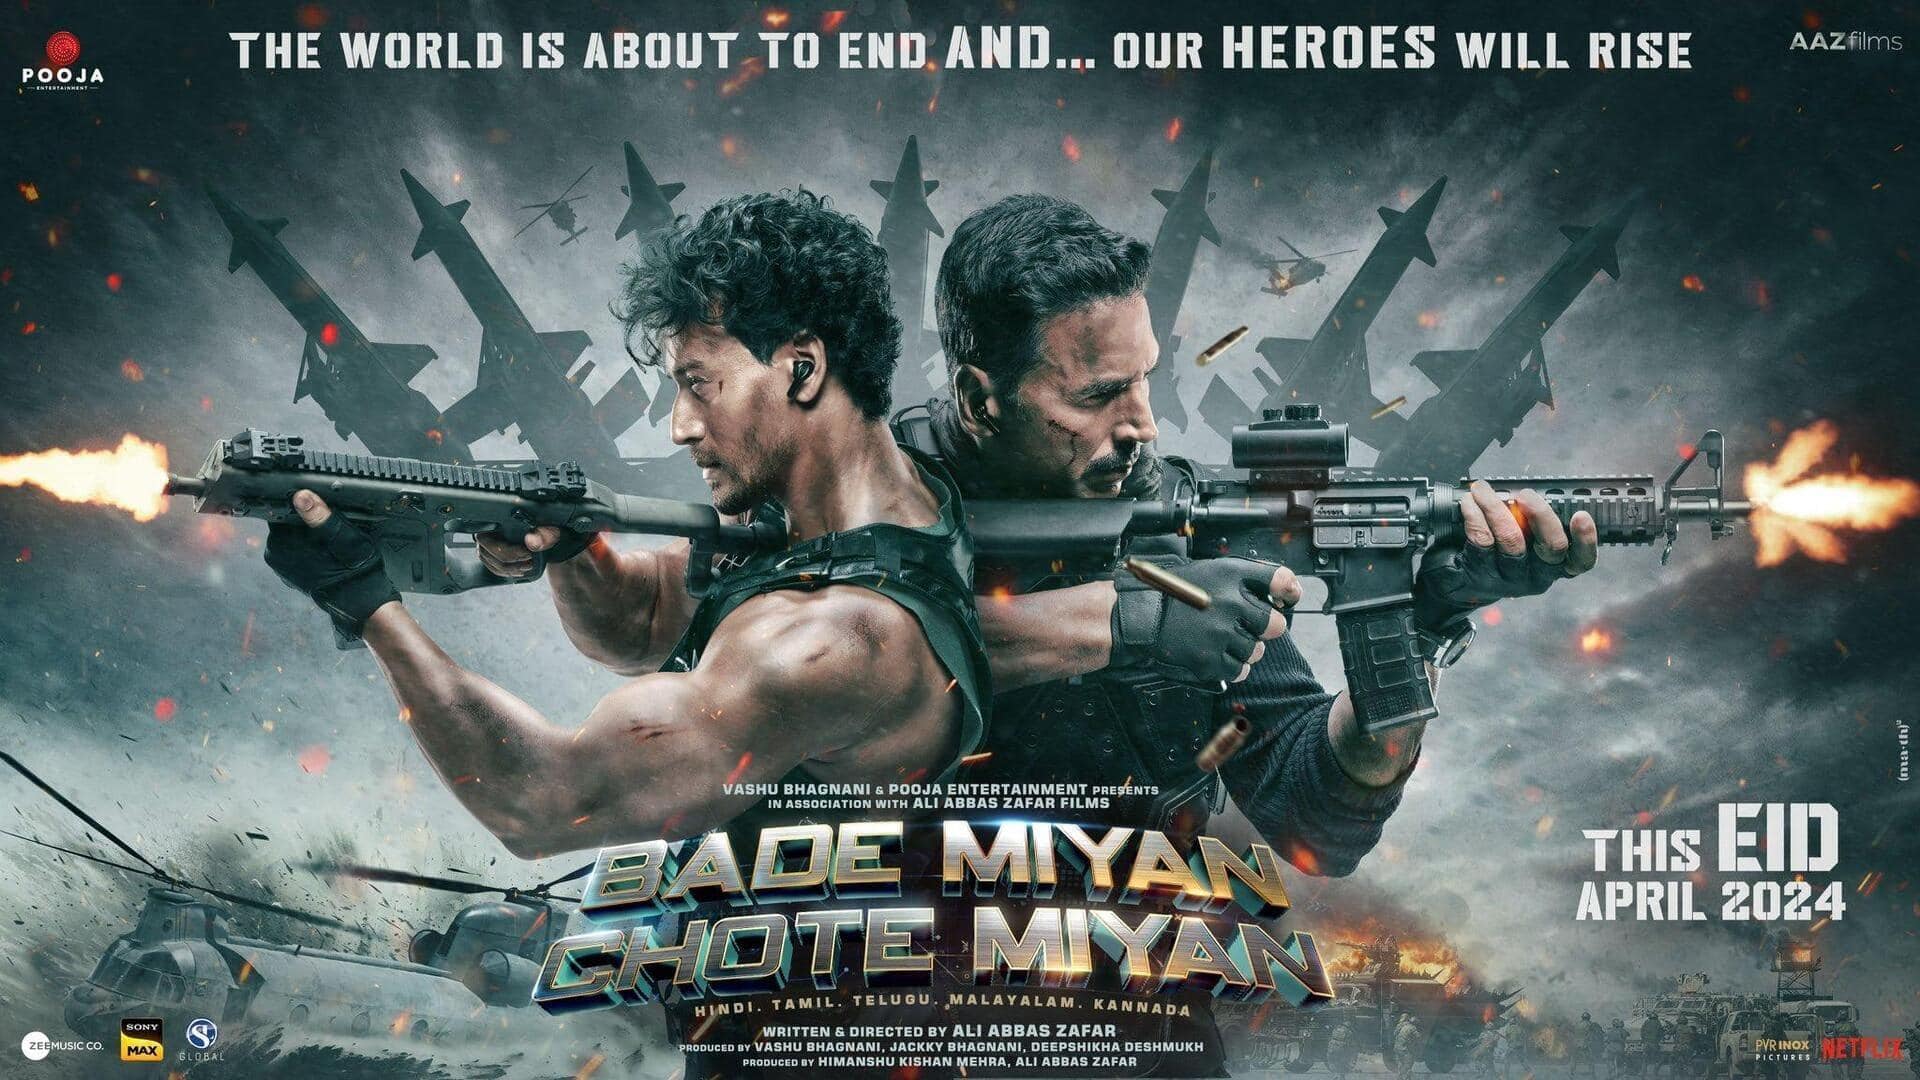 Box office: 'Bade Miyan Chote Miyan' edges toward ₹25cr